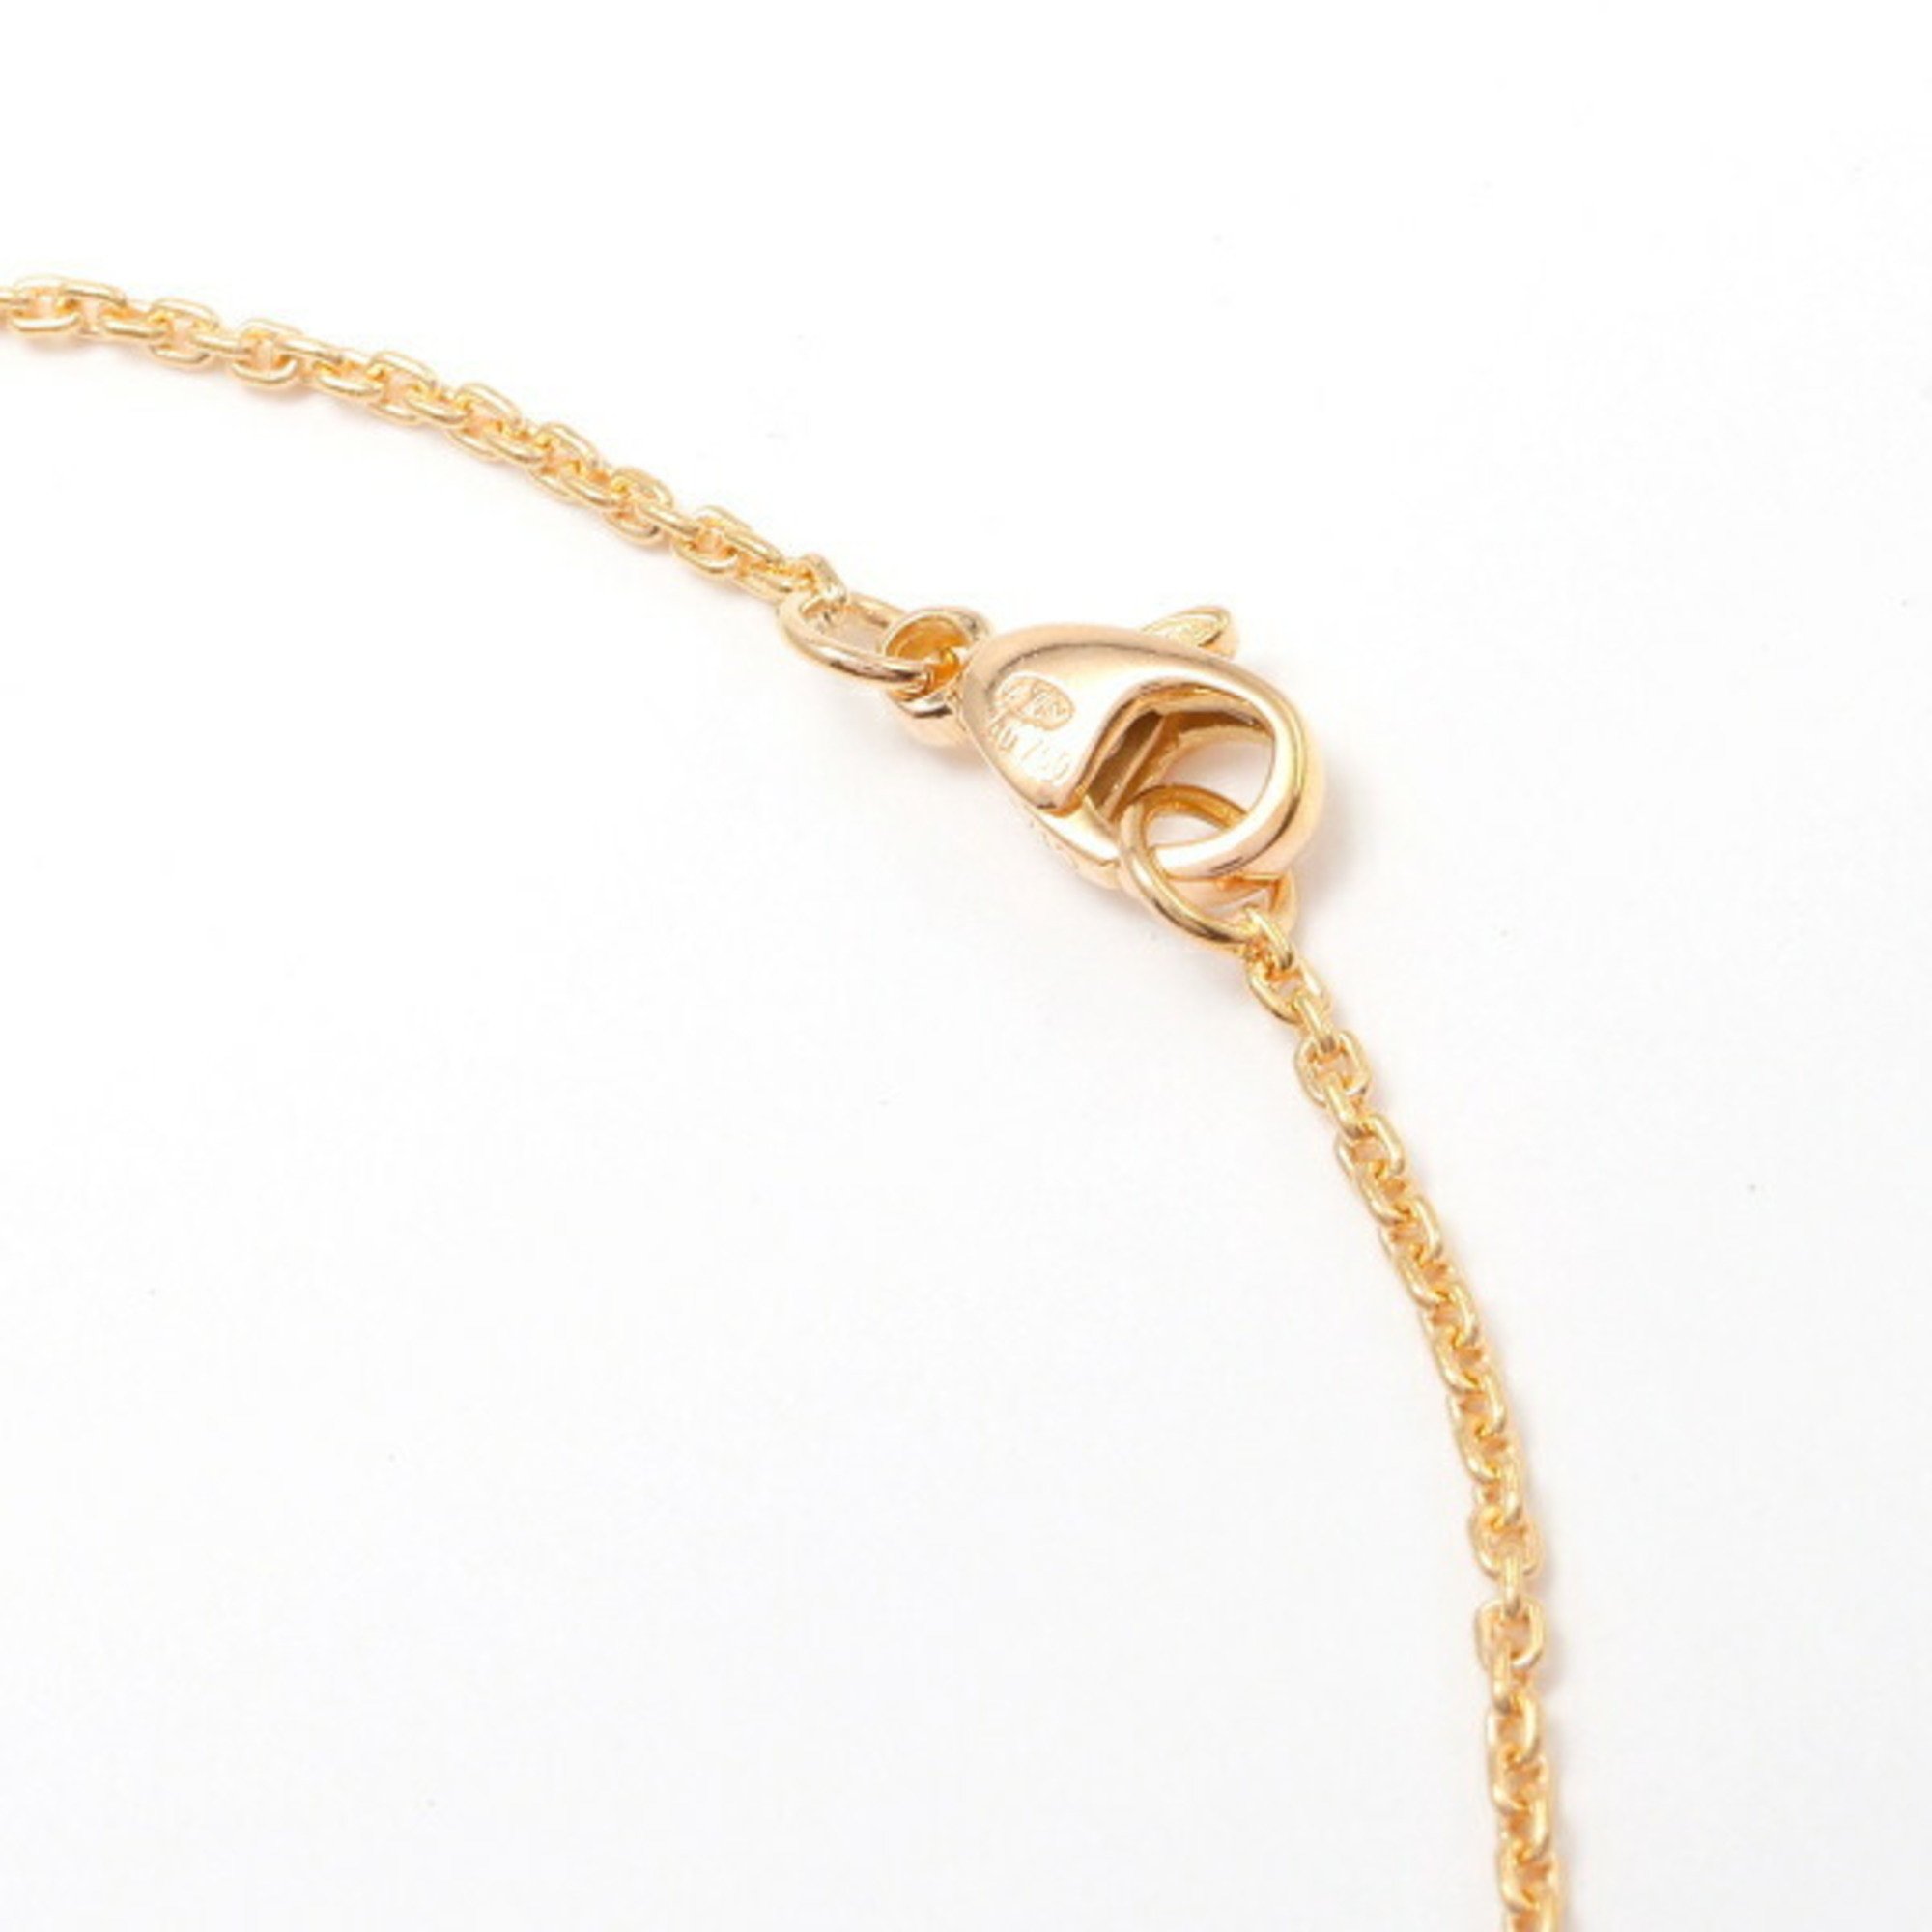 Louis Vuitton Pendant PM Blossom K18PG Pink Gold Necklace